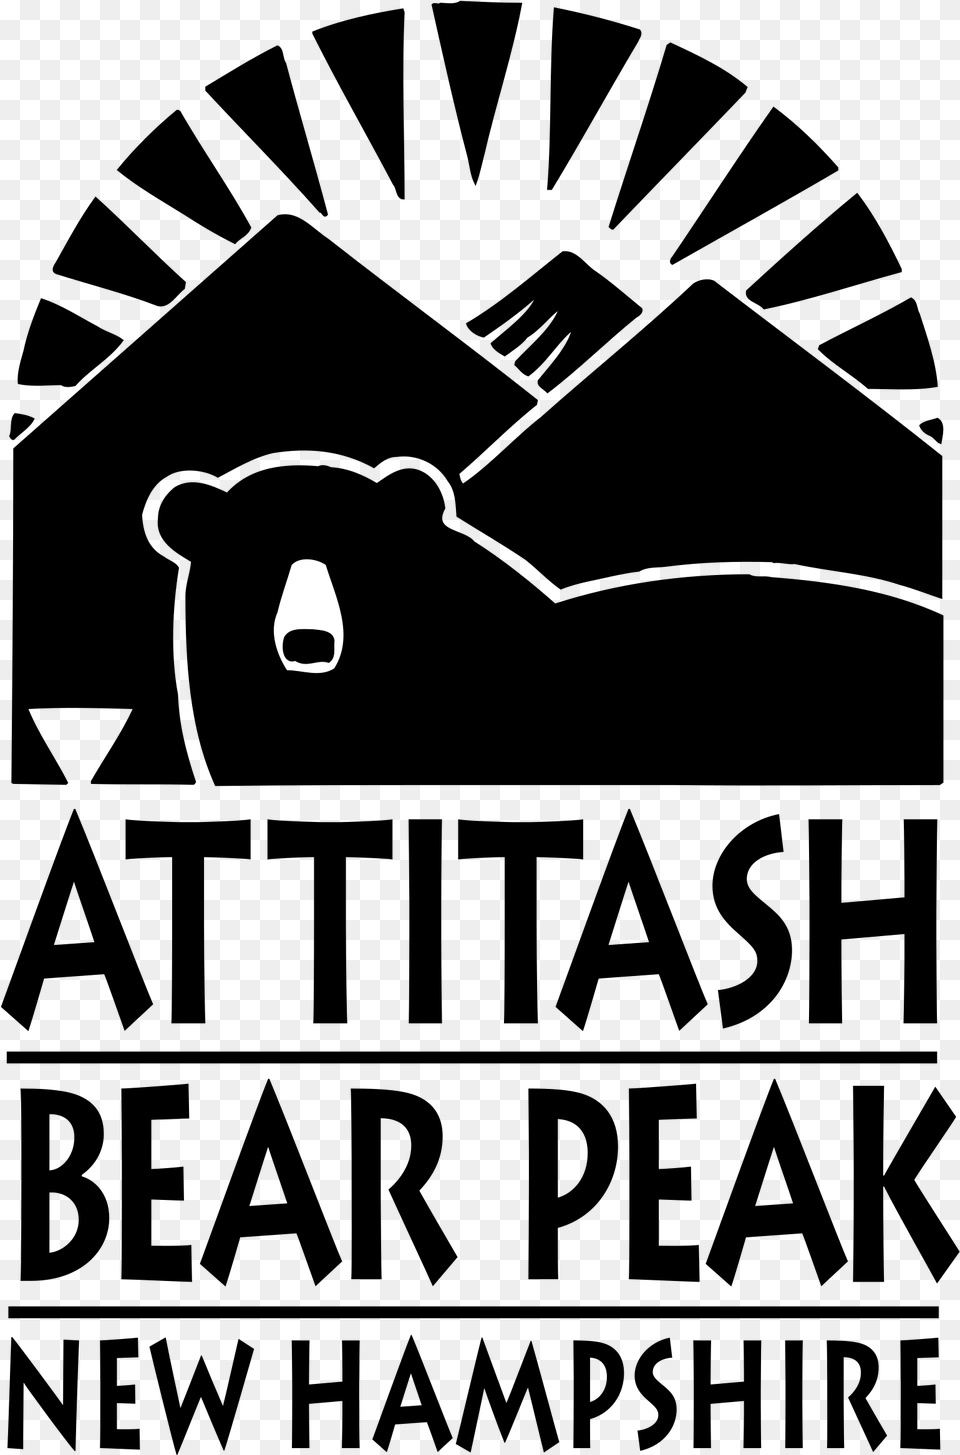 Attitash Bear Peak Logo Transparent Poster, Lighting Free Png